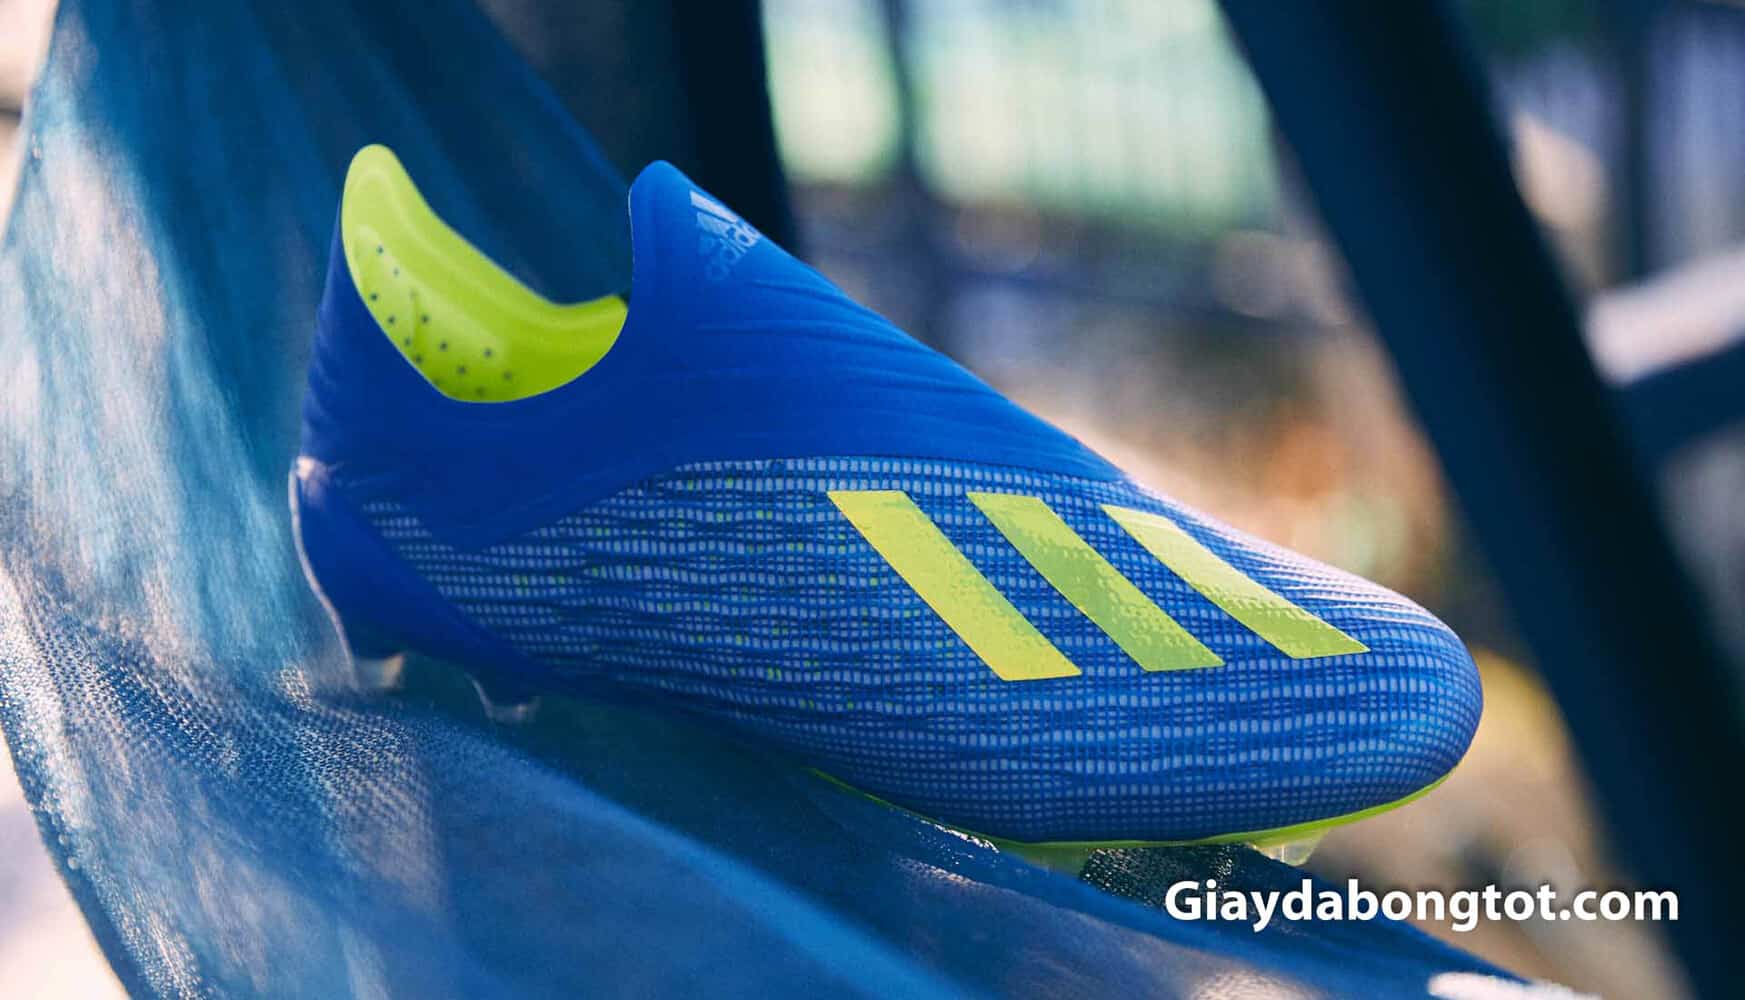 Đại diện Adidas X18+ lọt vào top 5 mẫu giày đá bóng ghi nhiều bàn thắng nhất tại Worldcup 2018